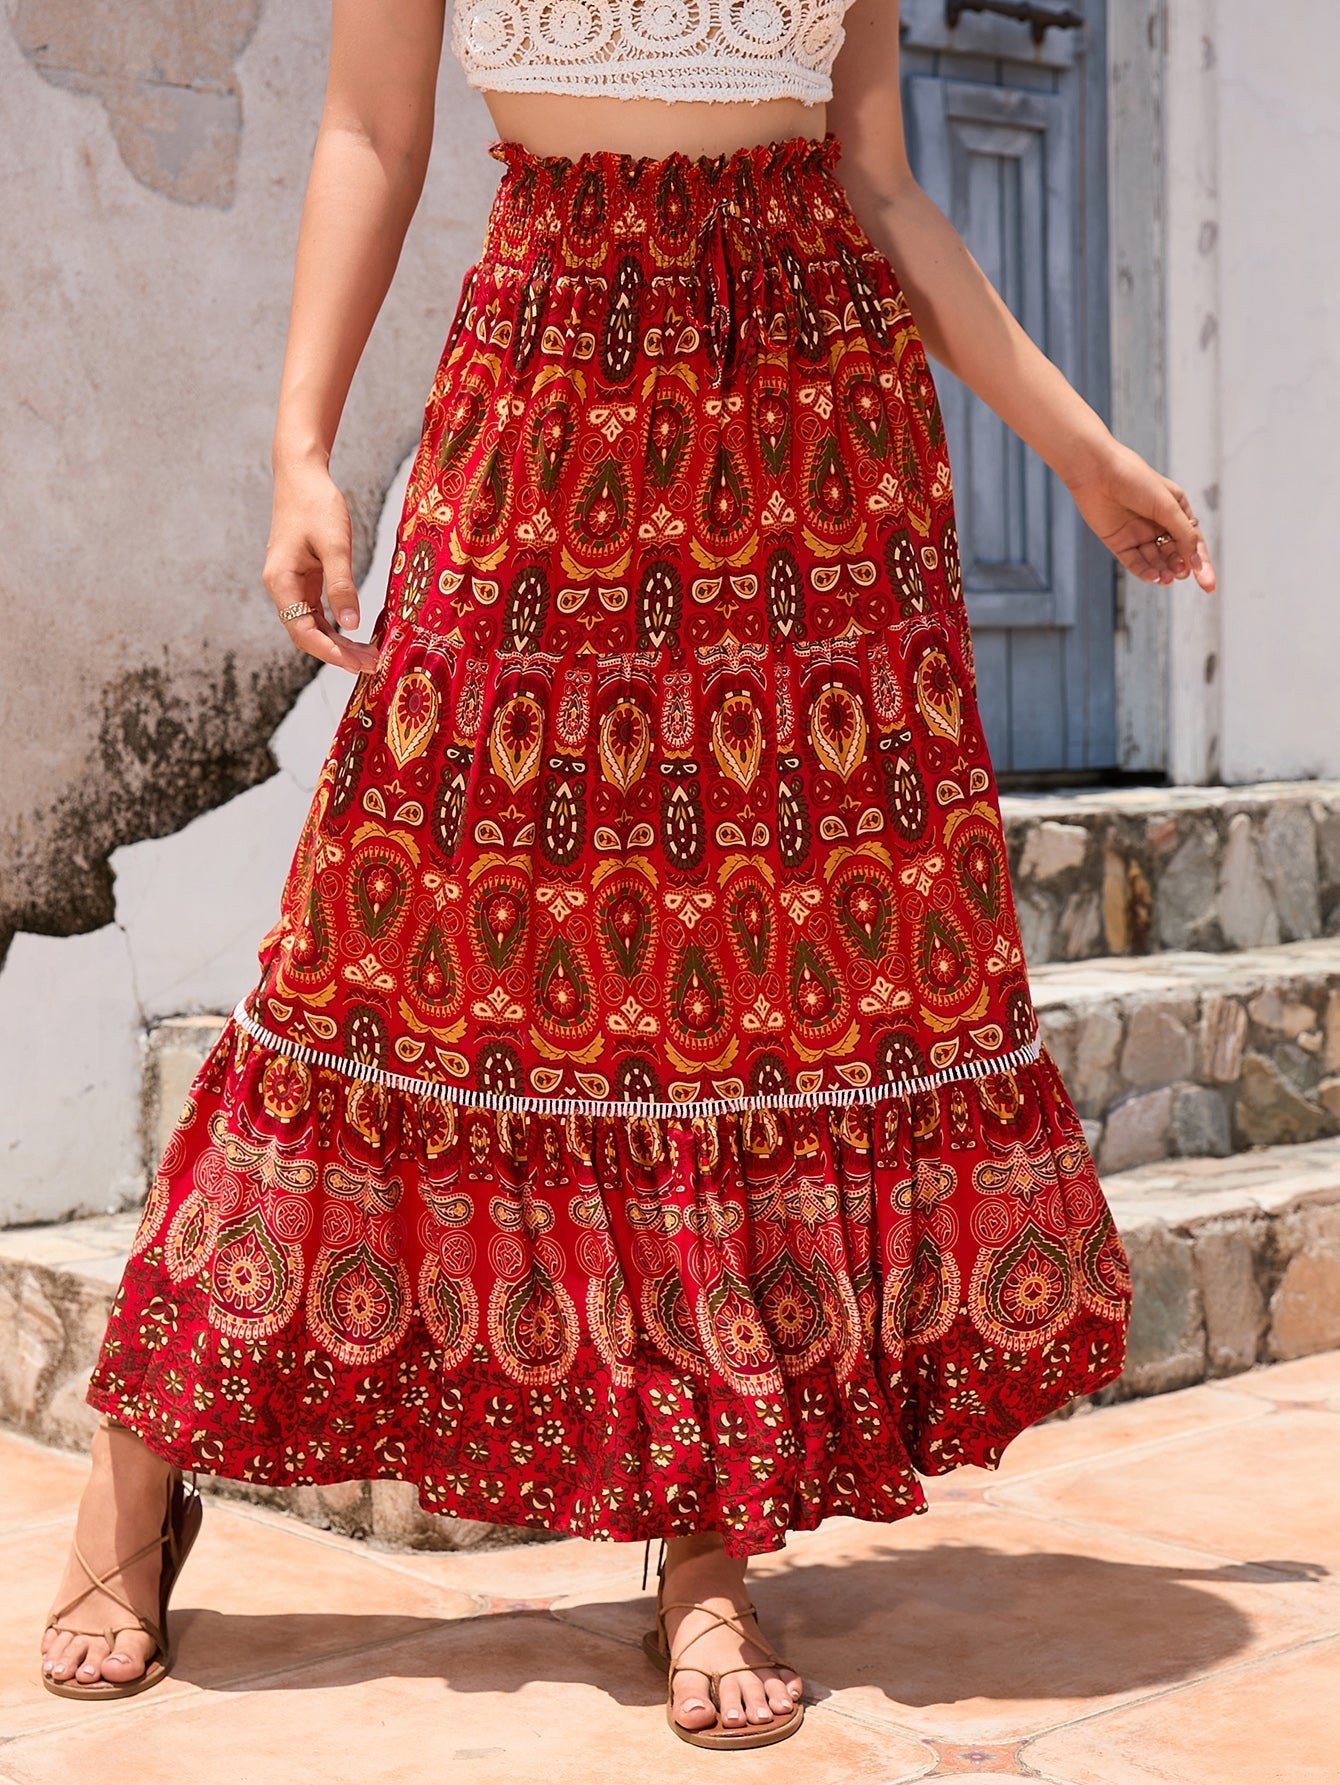 Lace Stitching Rayon Skirt Variety High Waist Large Swing Beach Dress